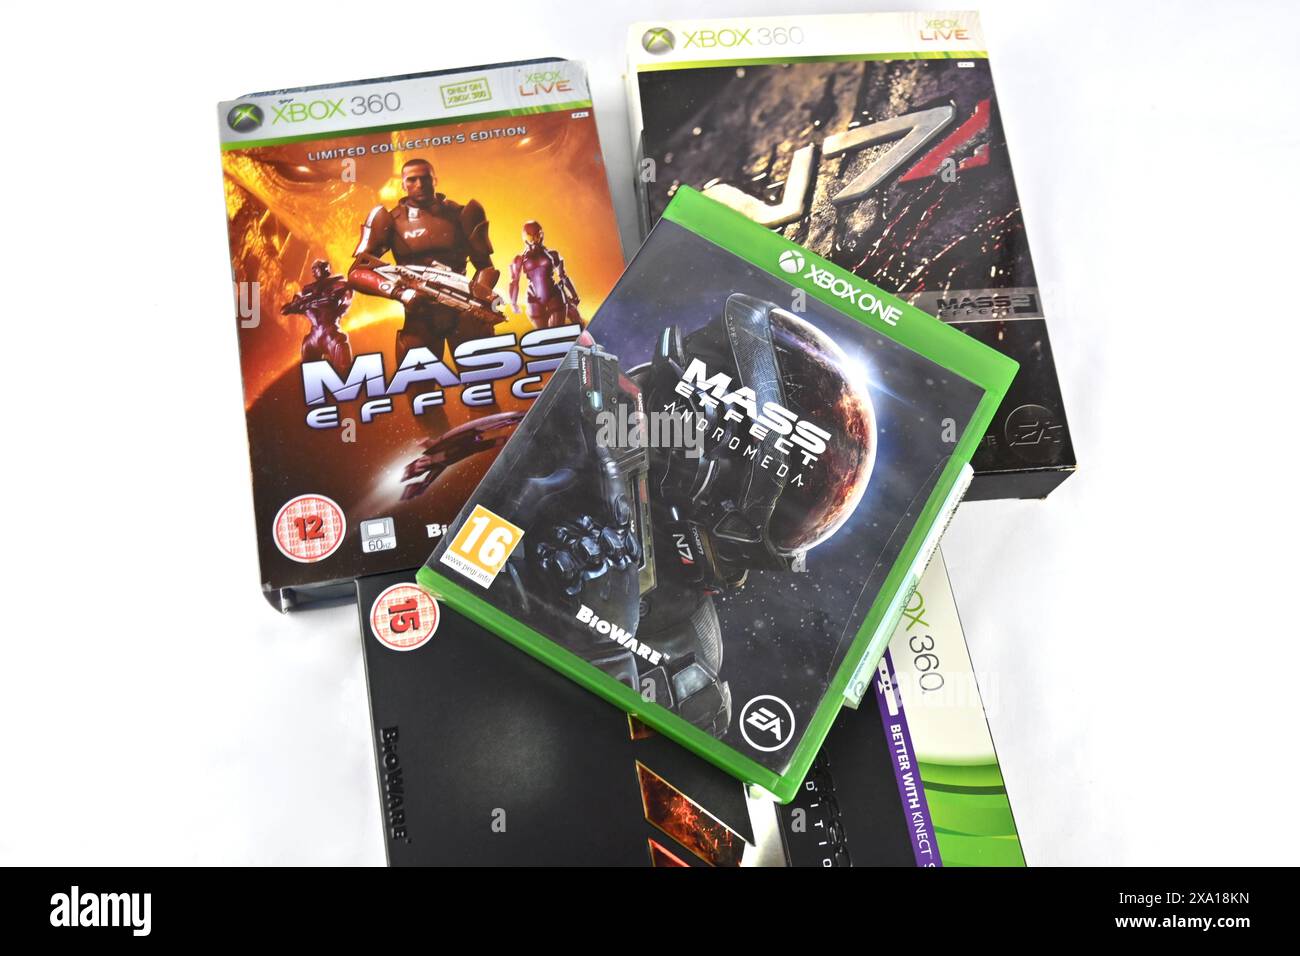 Jeux vidéo Mass Effect – pays de Galles, Royaume-Uni – 19 mai 2024 Banque D'Images